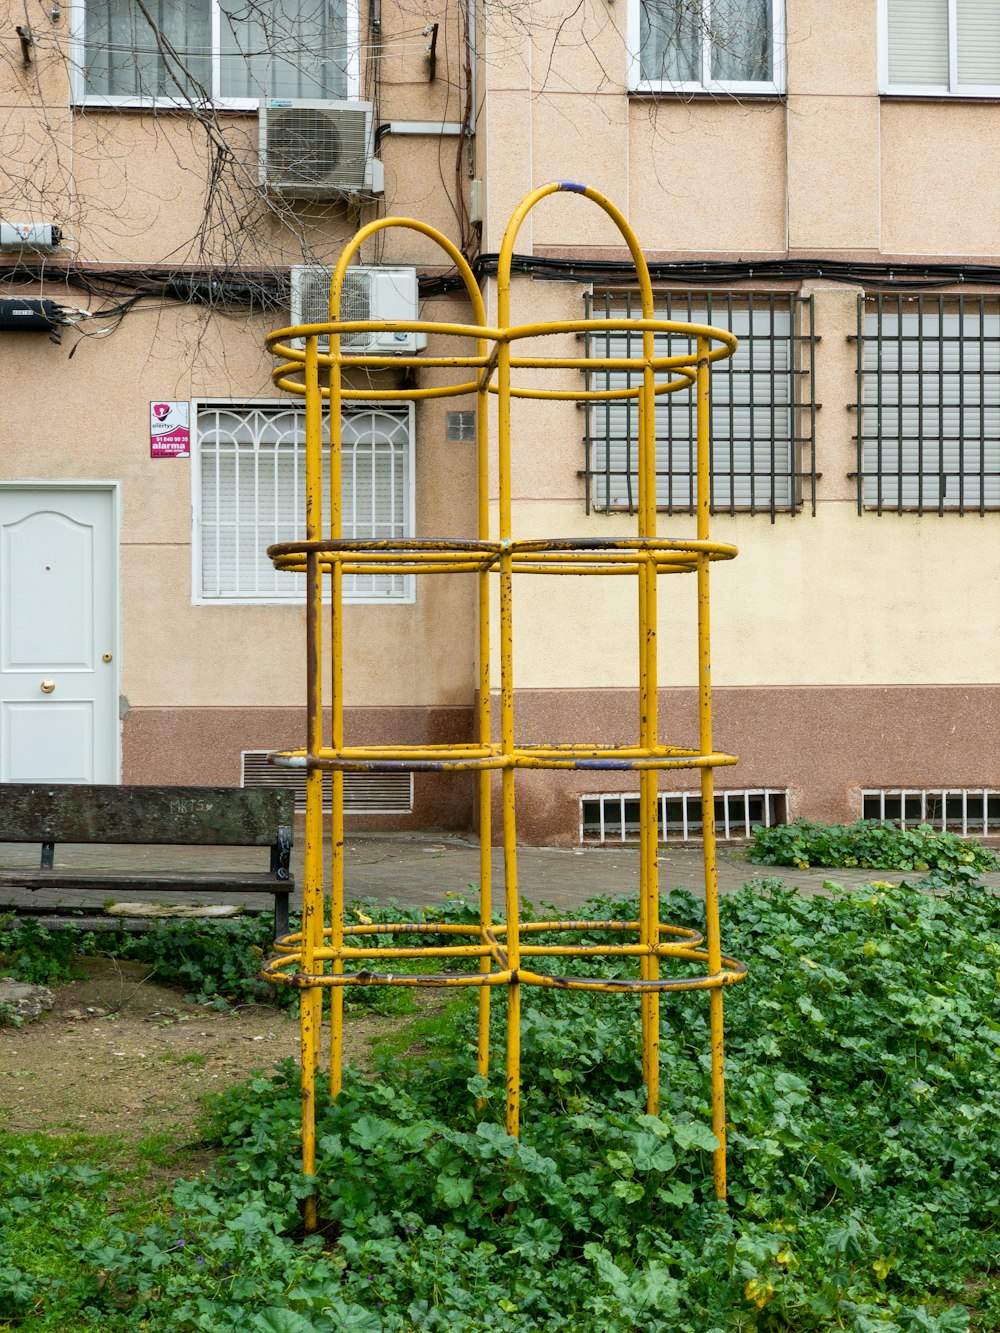 yellow metal ladder on green grass field